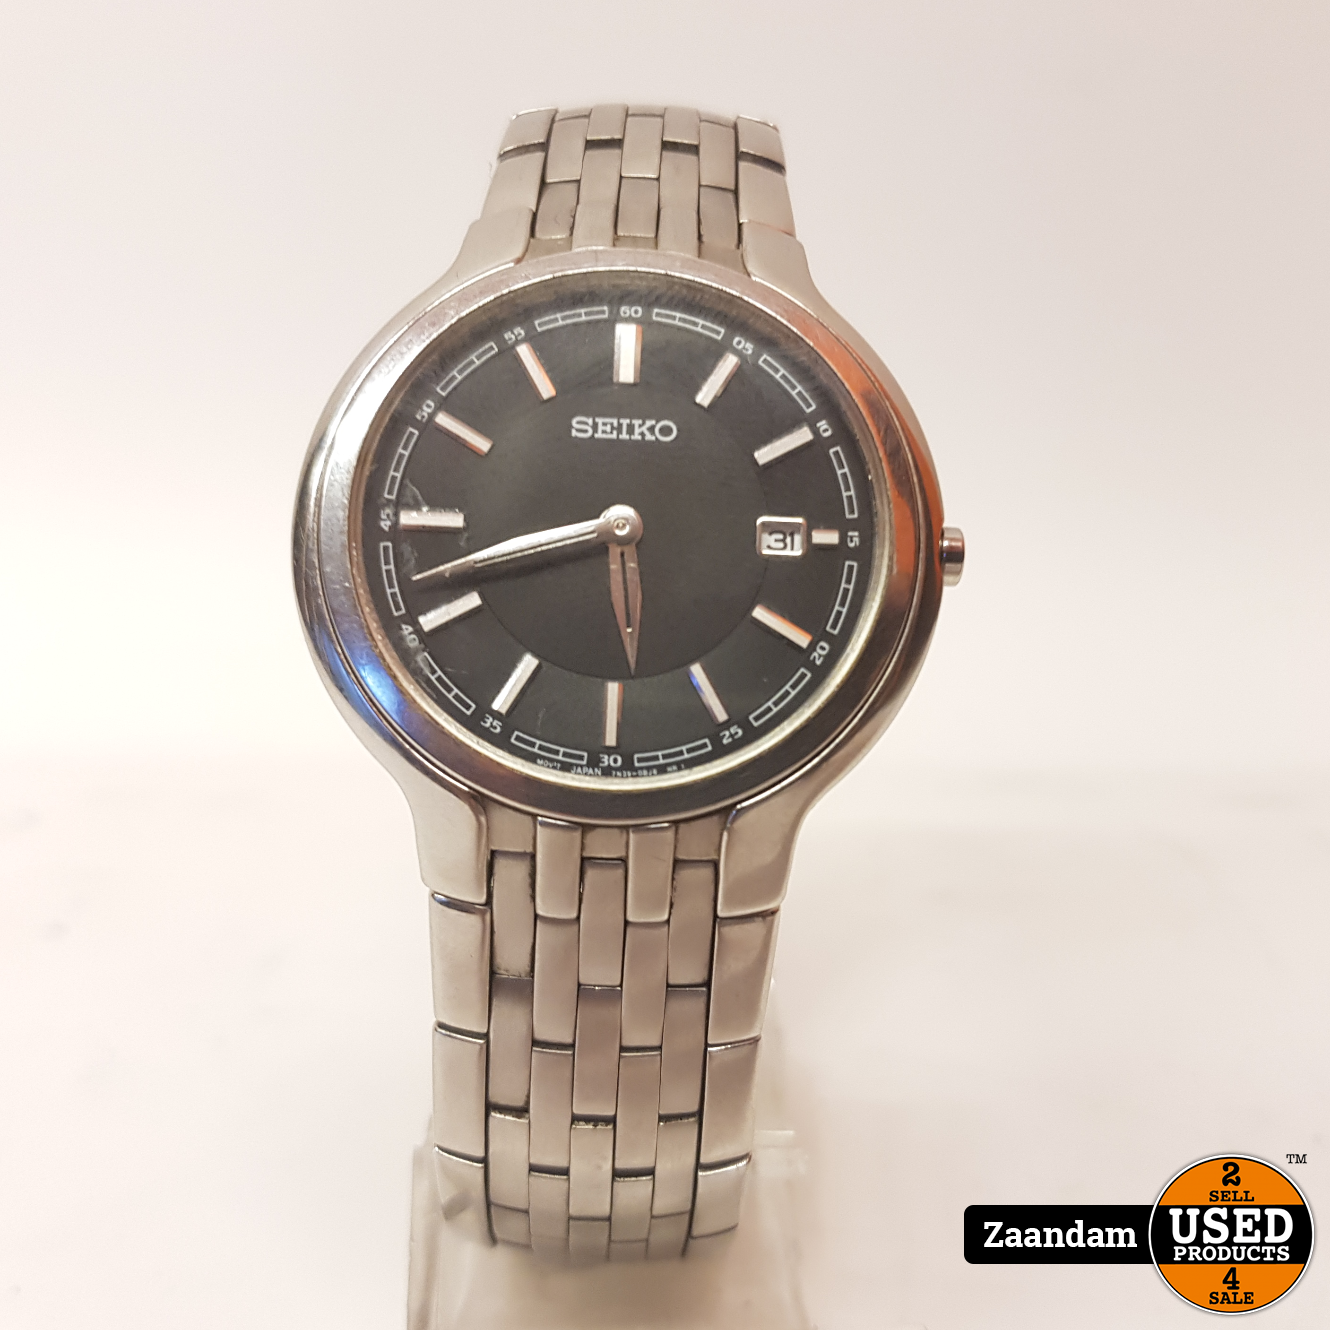 Seiko 7N39-0AX0 Horloge | Quartz | In staat - Used Products Zaandam